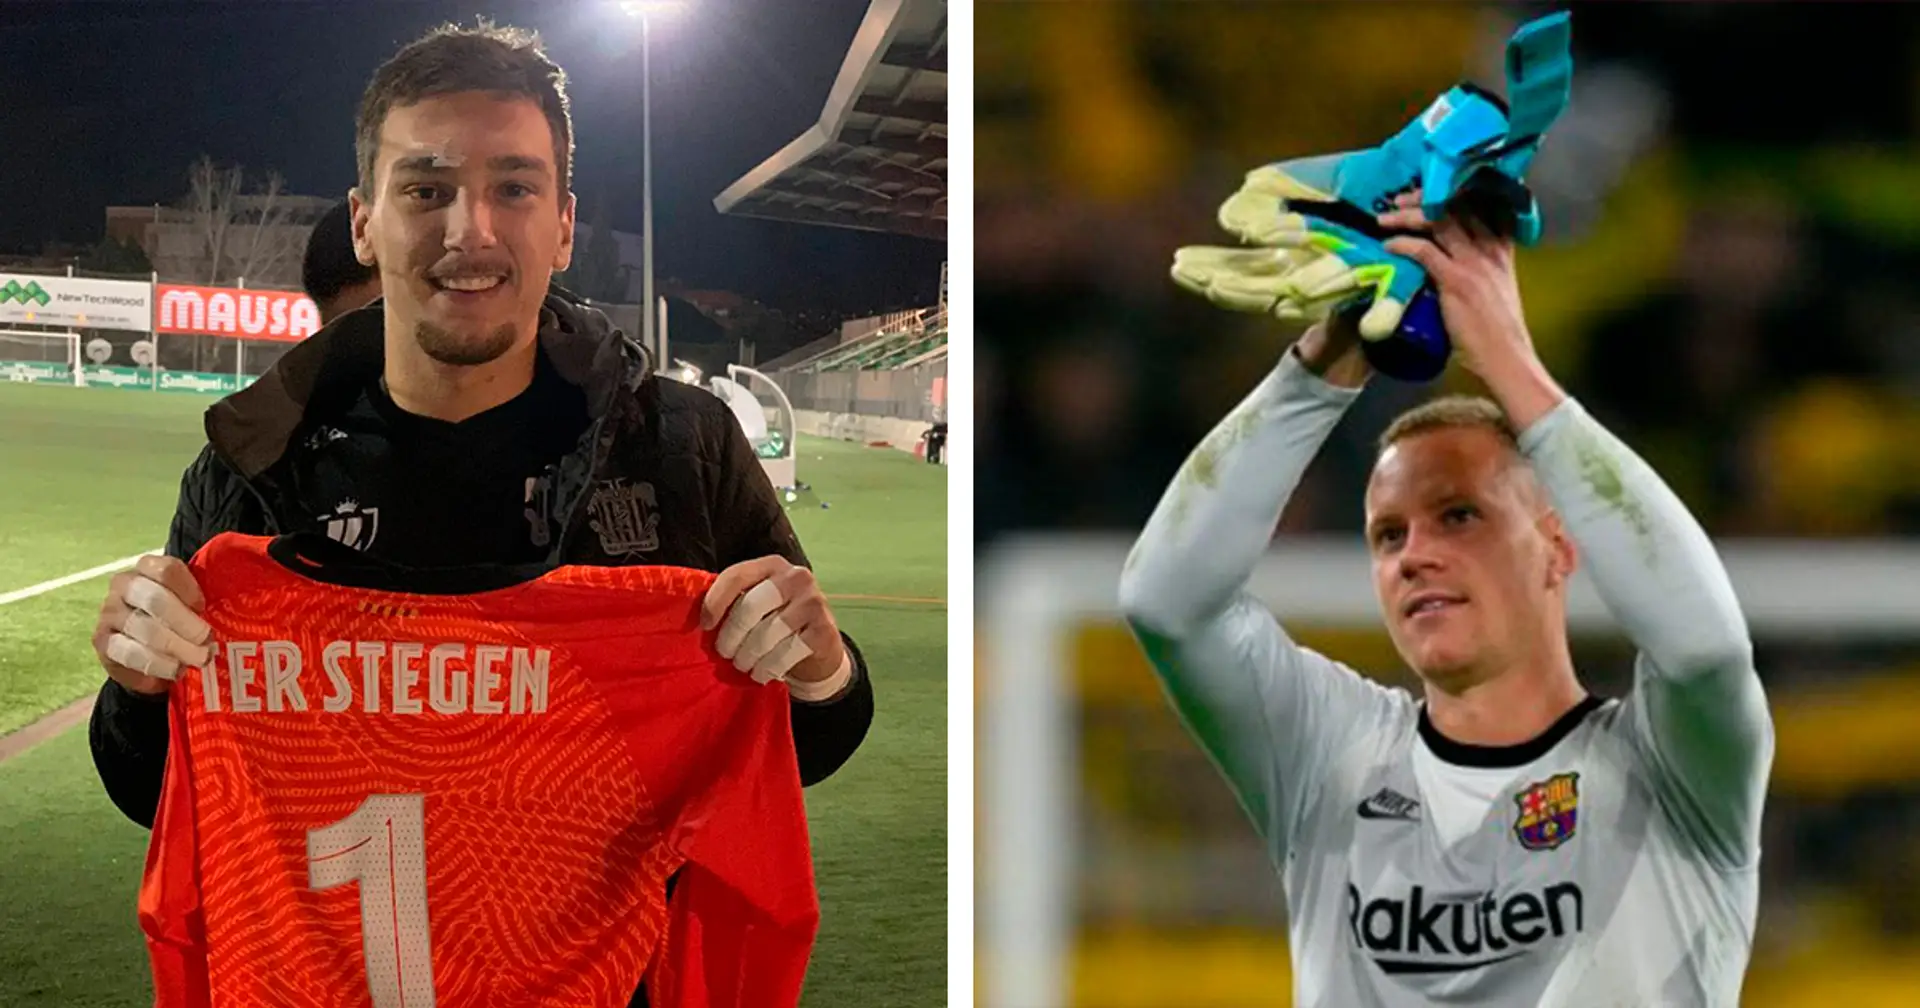 Hero recognises hero: Ter Stegen hands his jersey to Cornella goalkeeper after Copa del Rey game